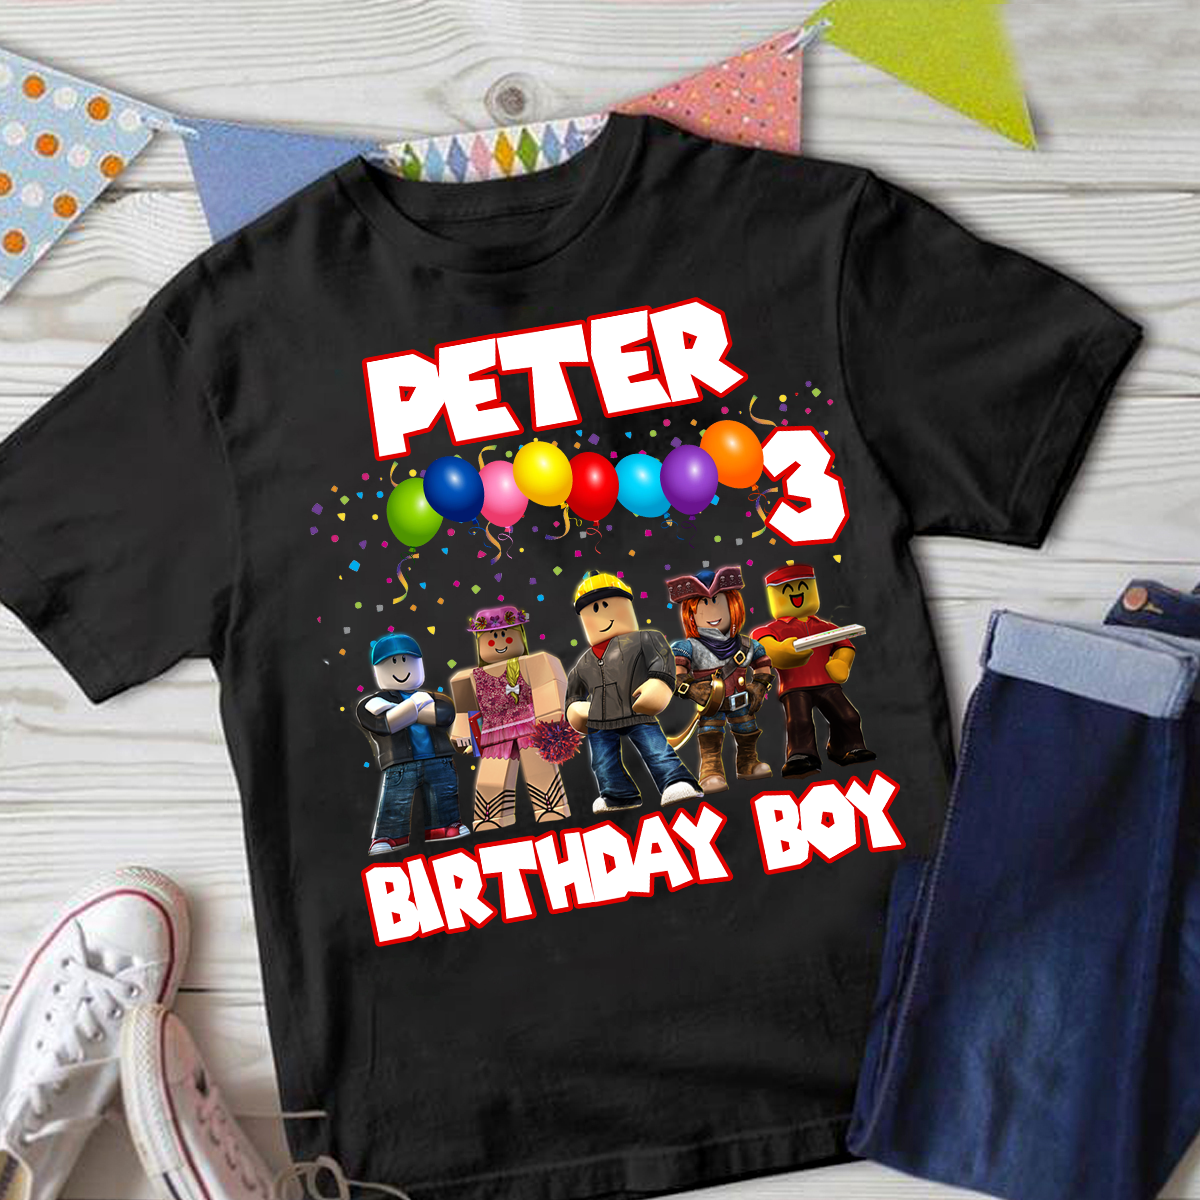 Personalized Birthday Boy Shirt Set, Family Birthday Shirt, Custom Birthday, Birthday Family, Video Game Matching Birthday Birthday Robots Shirt